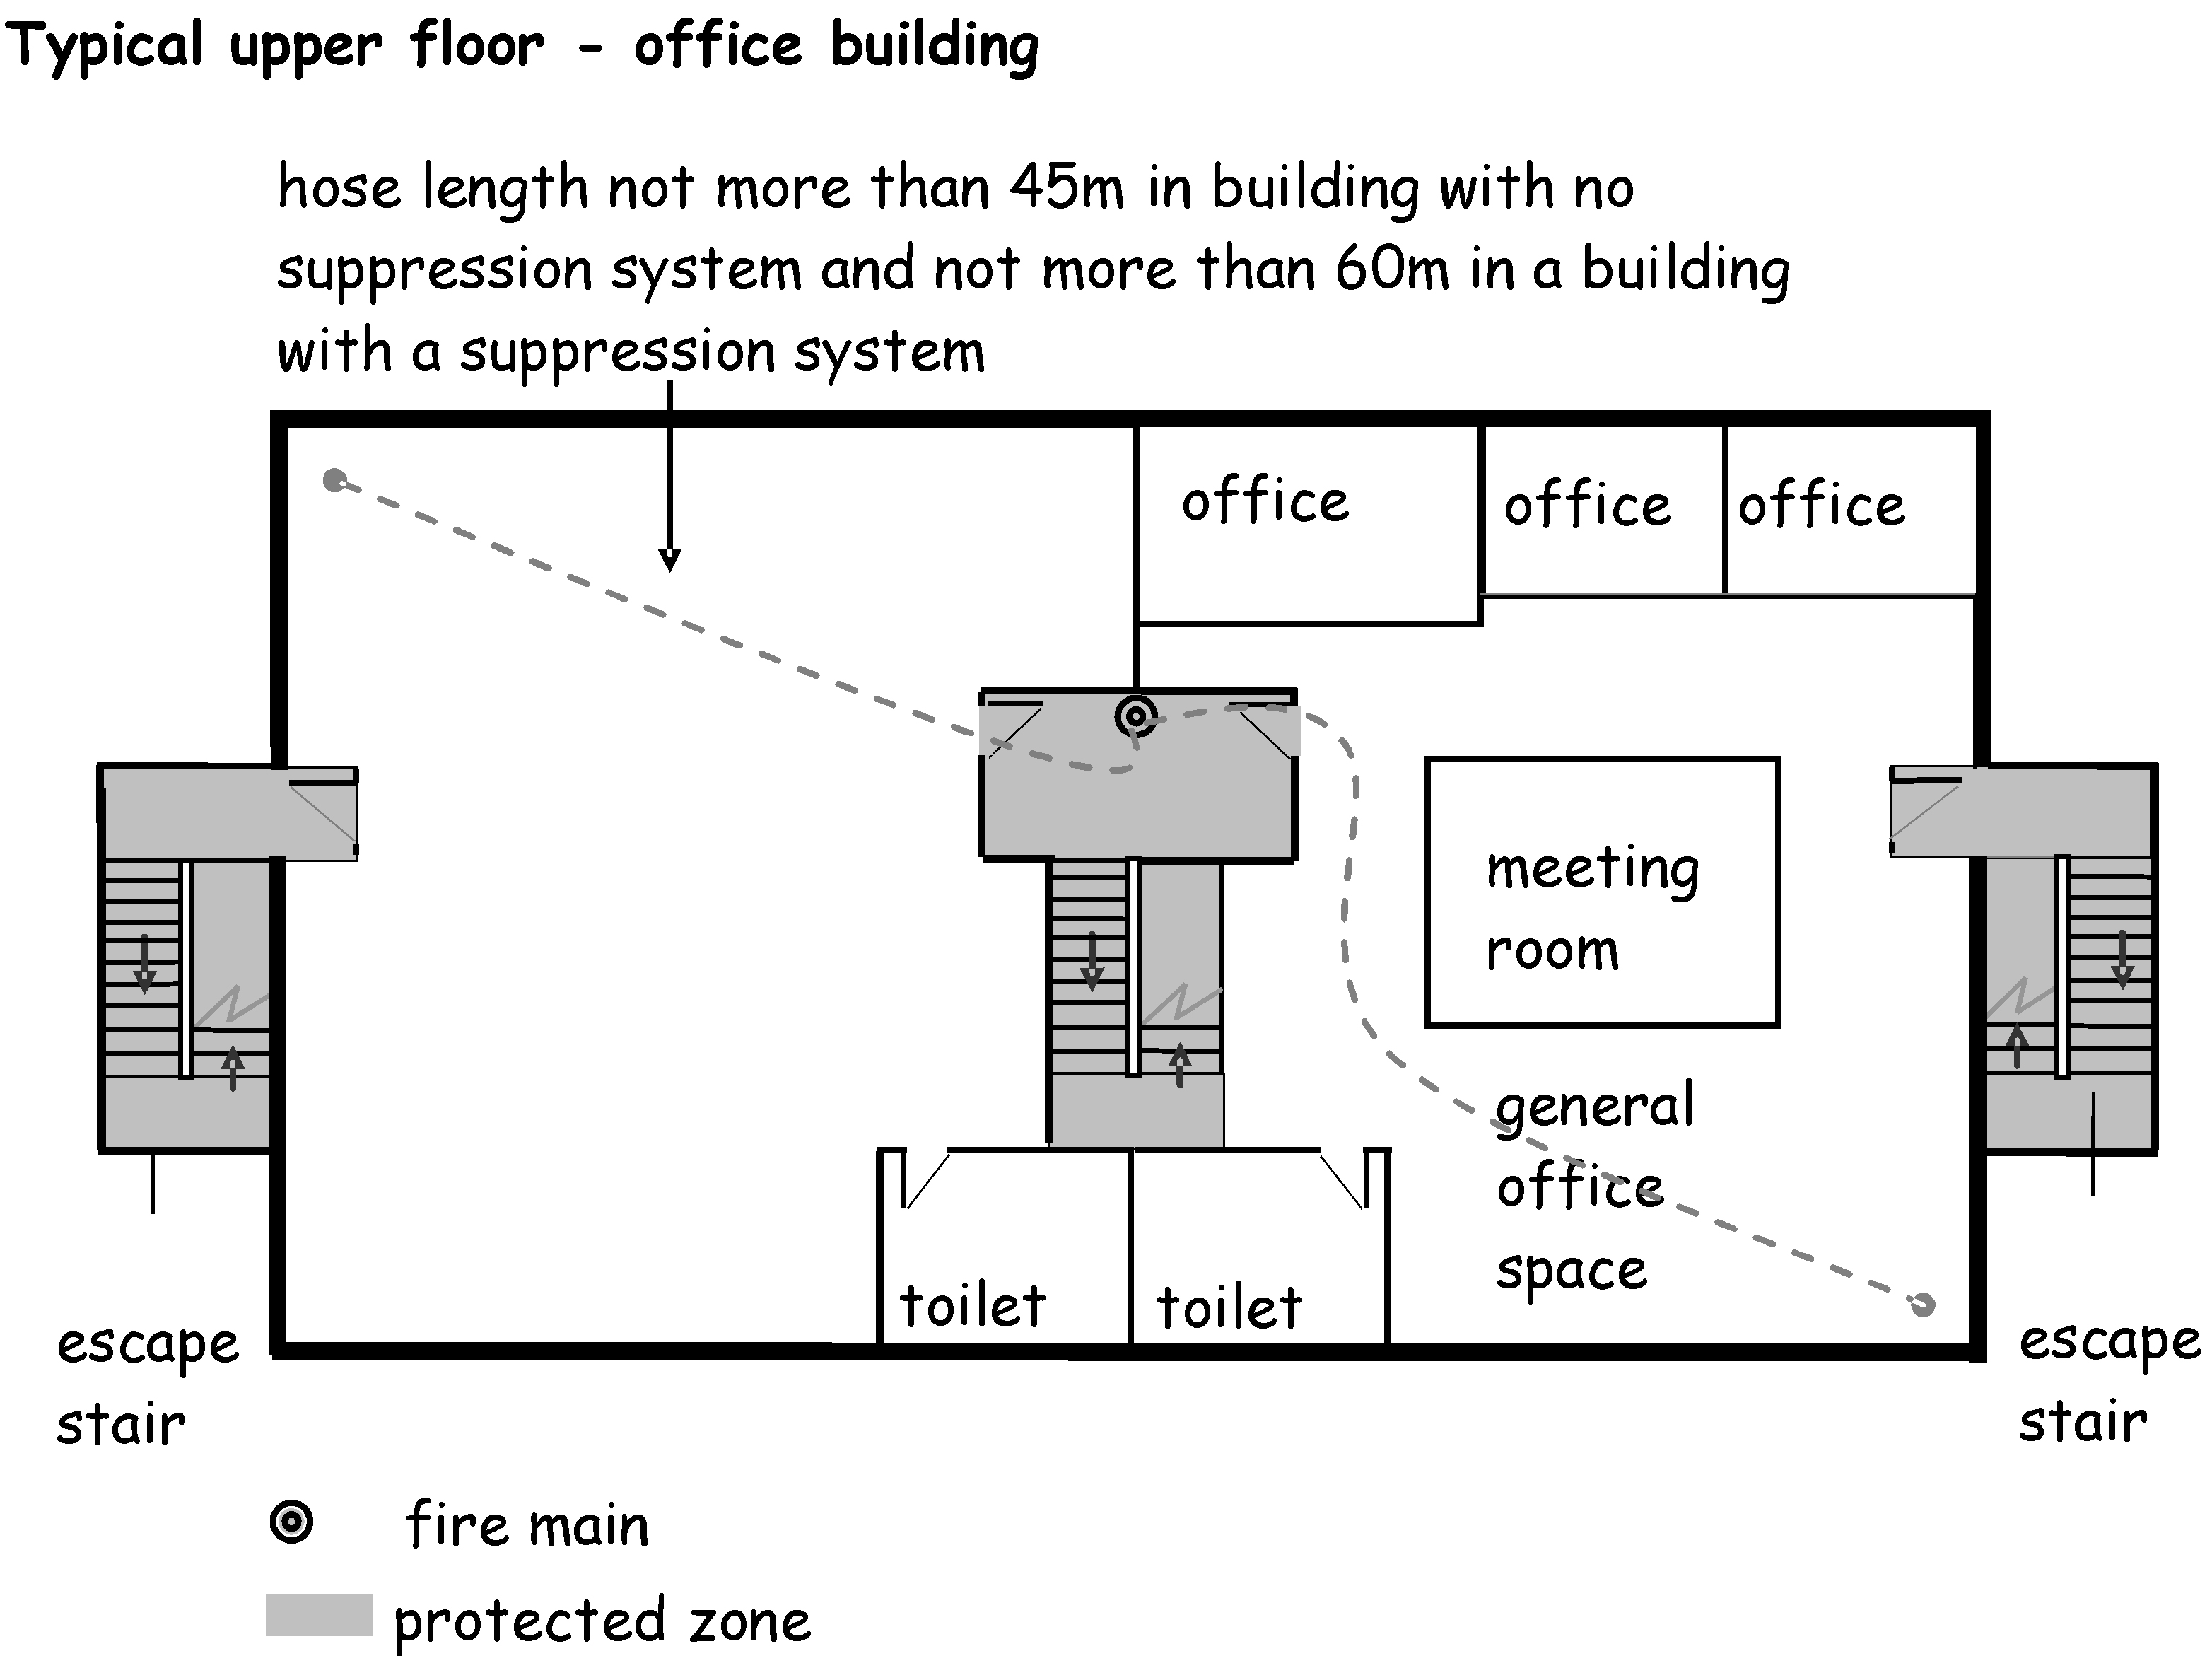 Typical upper floor - office building